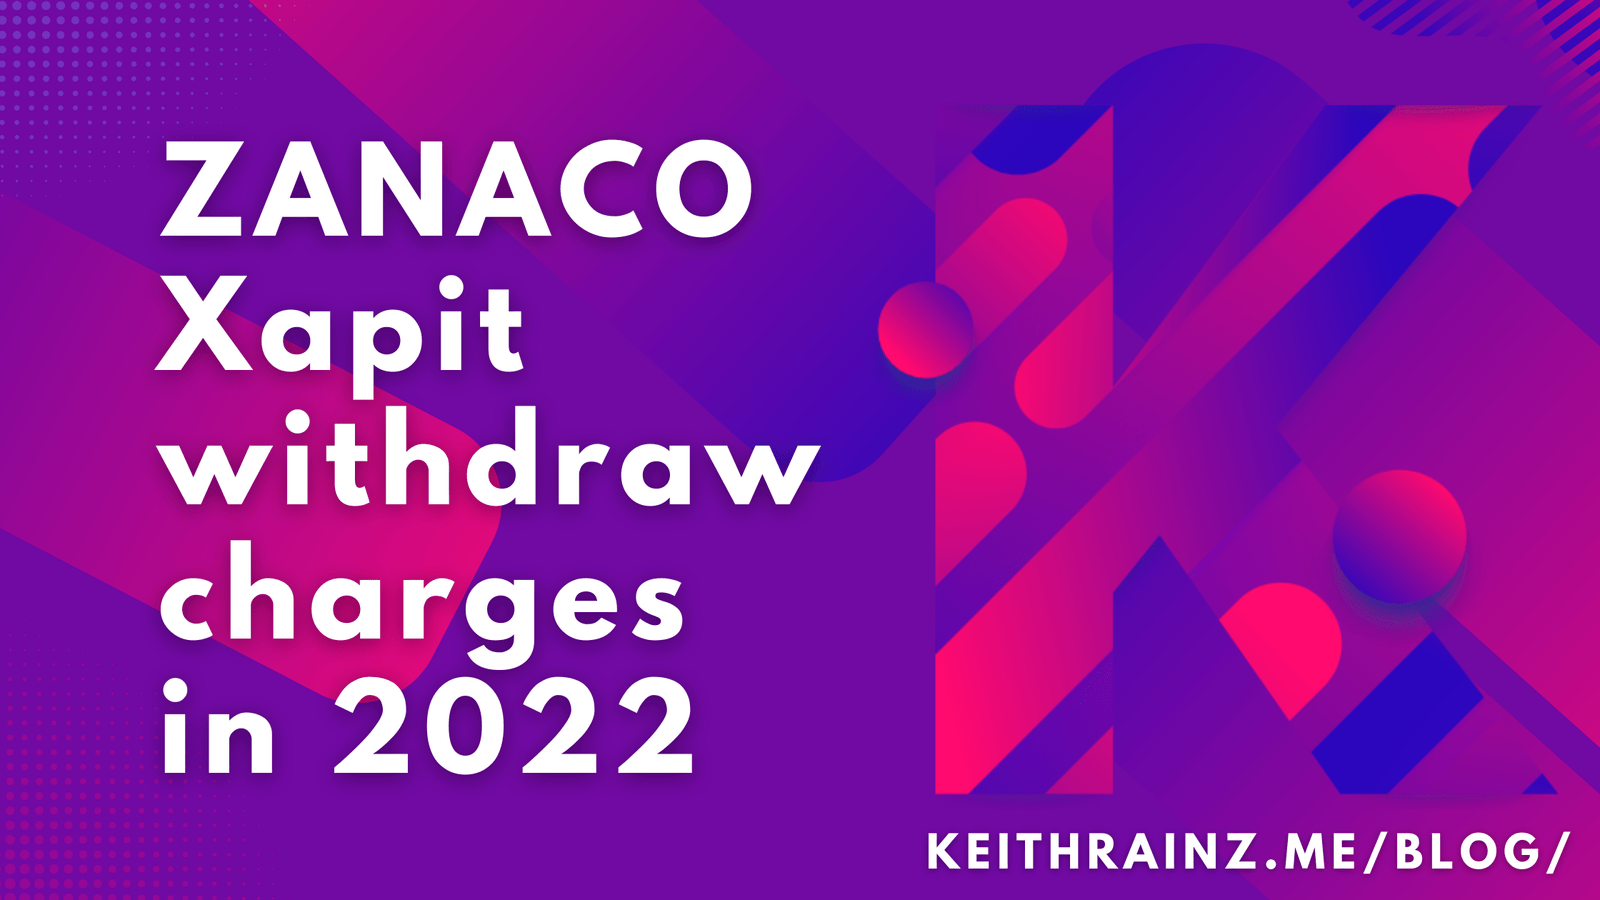 ZANACO Xapit withdraw charges in 2022